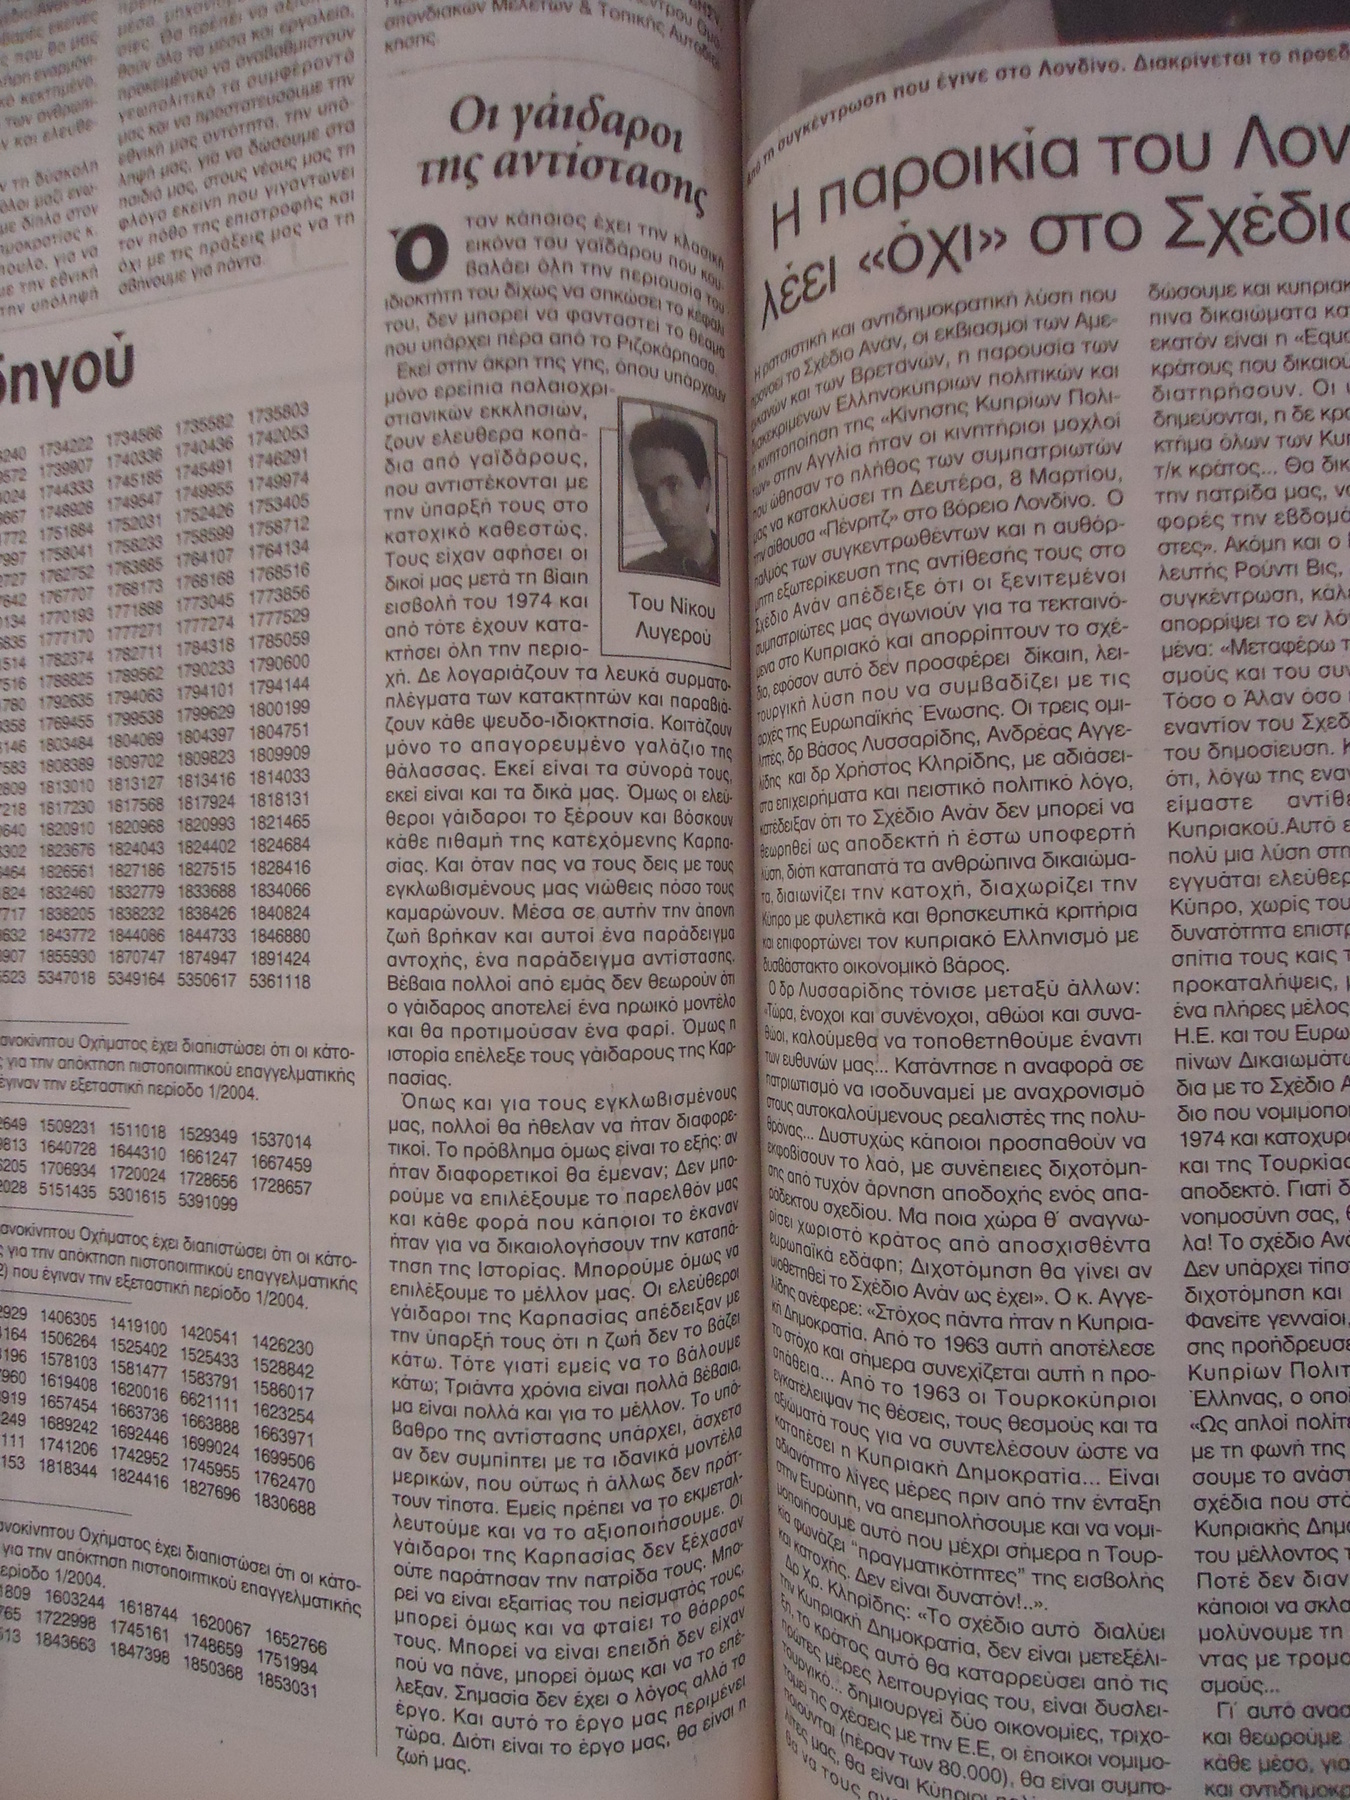 Οι γάιδαροι της αντίστασης. H ΣHMEPINH 20/03/2004.